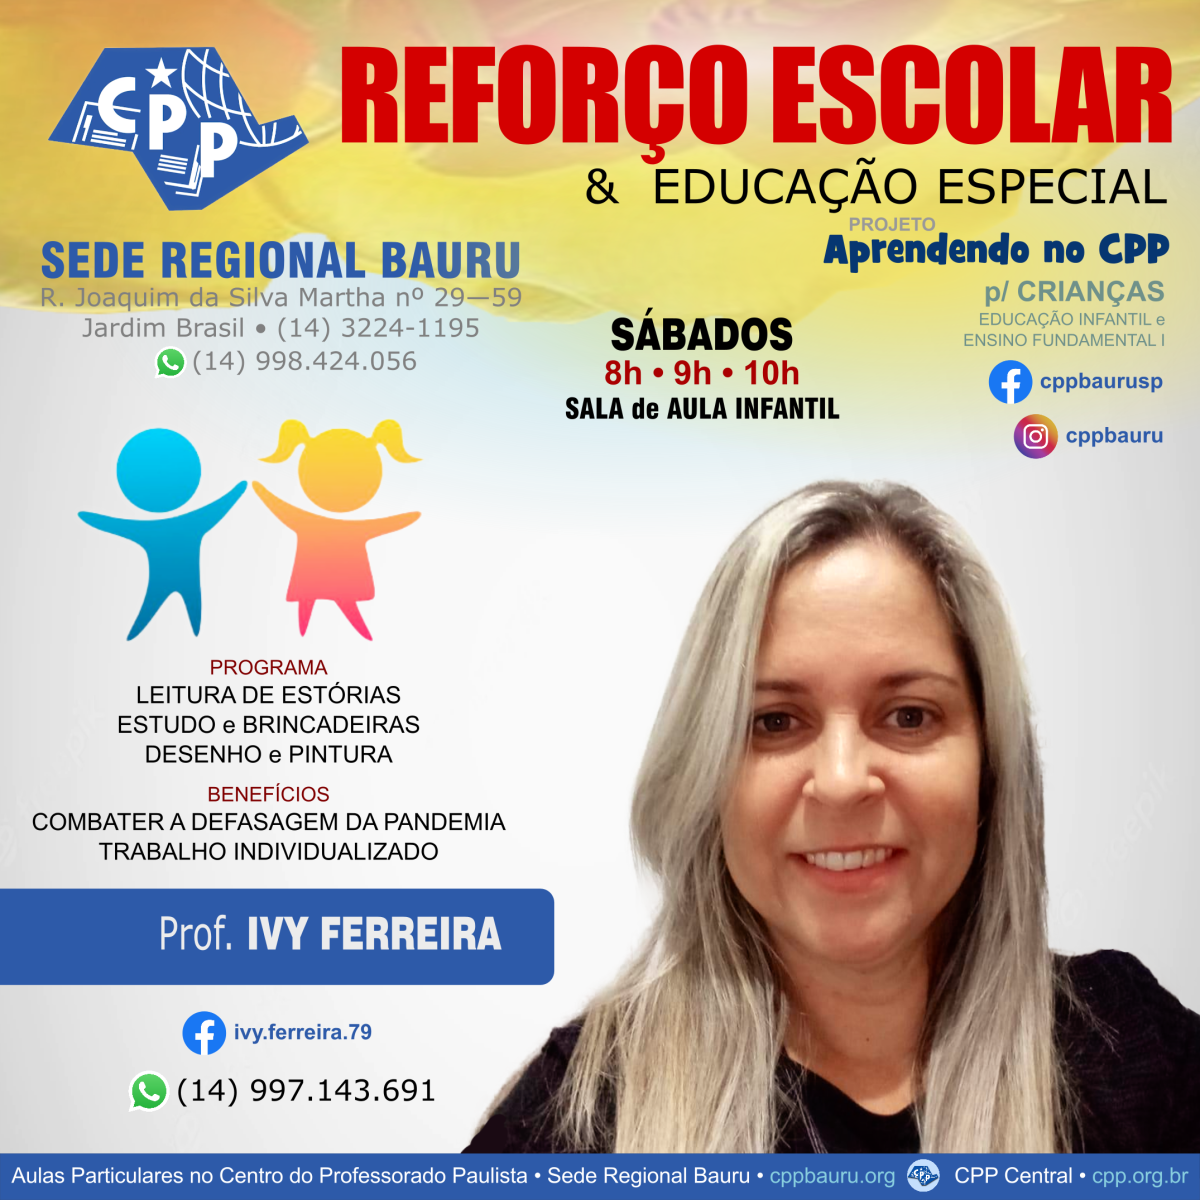 Ivy Ferreira • Professora de Reforço Escolar e Educação Especial